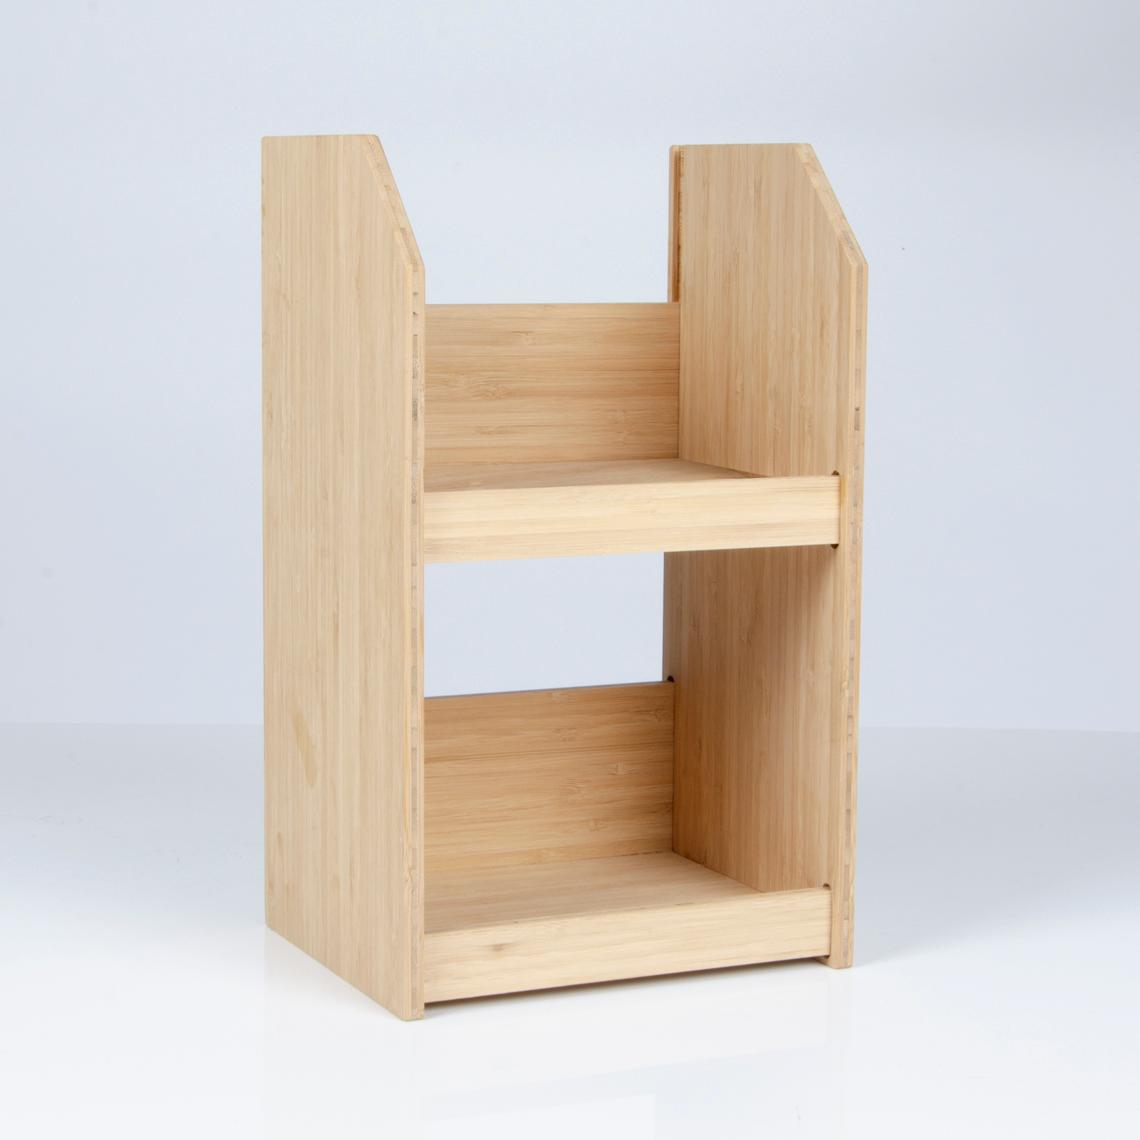 【をいただい】 Furniture Wooden Display Stands Wooden Vase Base Wood Root